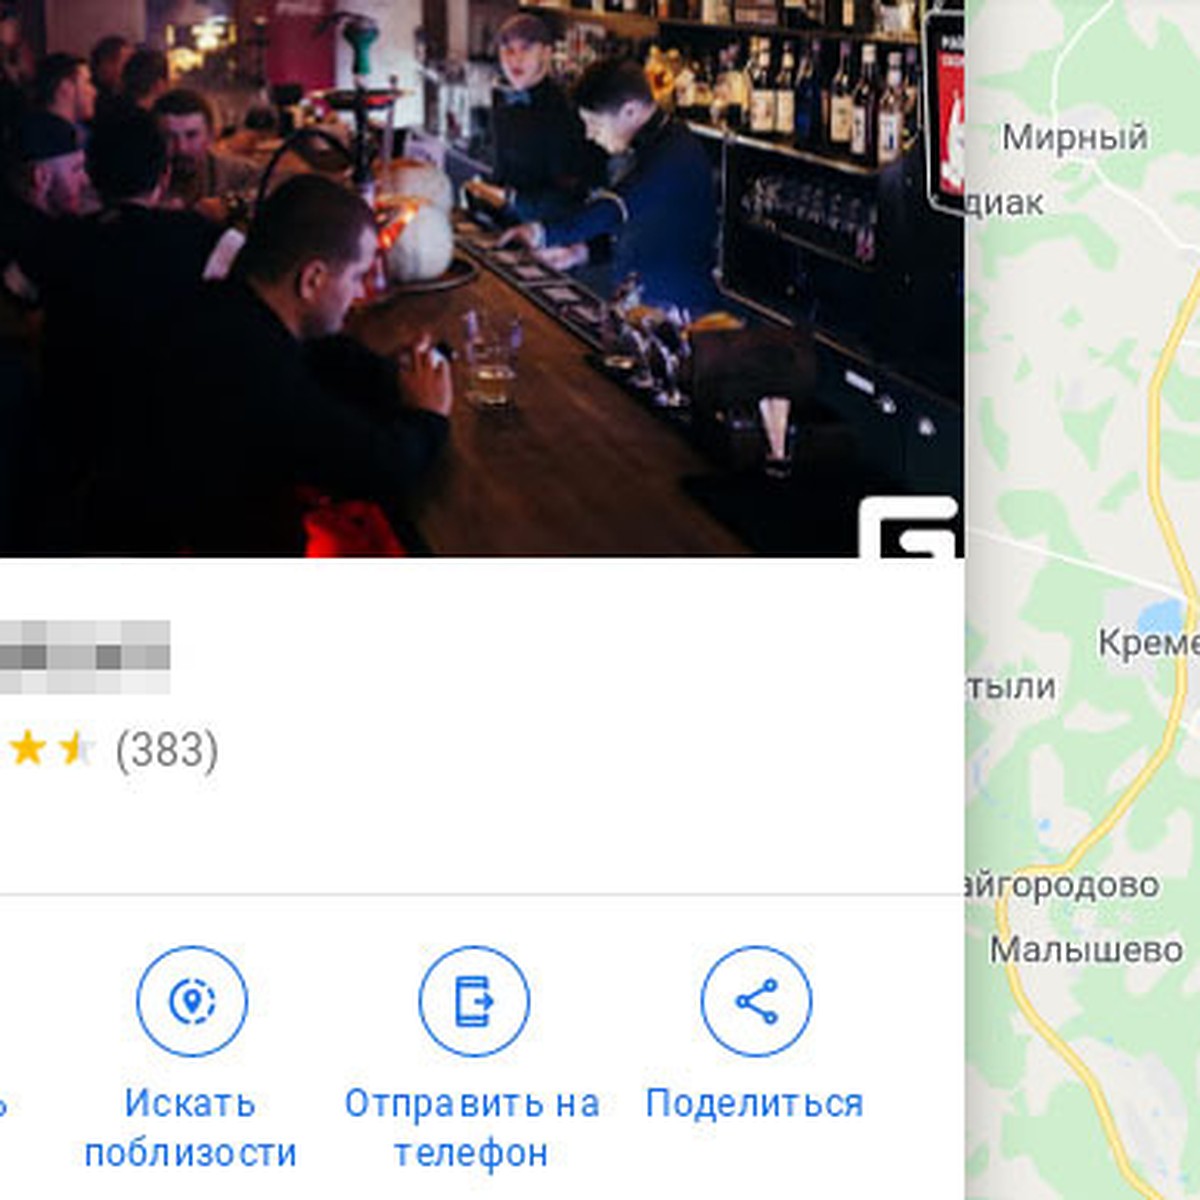 На карте Челябинска появился гей-бар - KP.RU